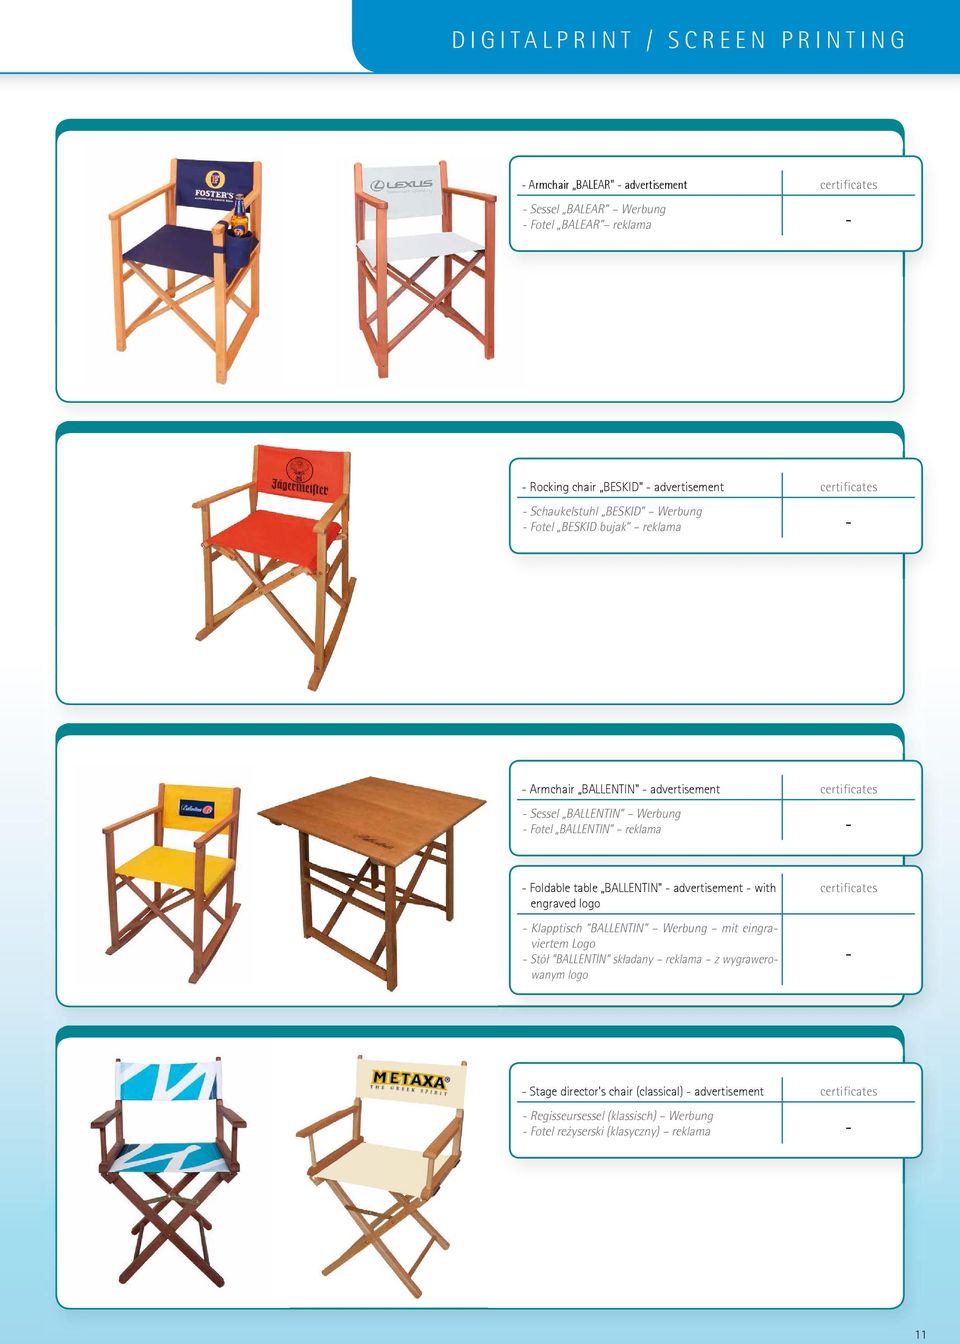 reklama - - Foldable table BALLENTIN" - advertisement - with engraved logo - Klapptisch BALLENTIN Werbung mit eingraviertem Logo - Stół BALLENTIN składany reklama z